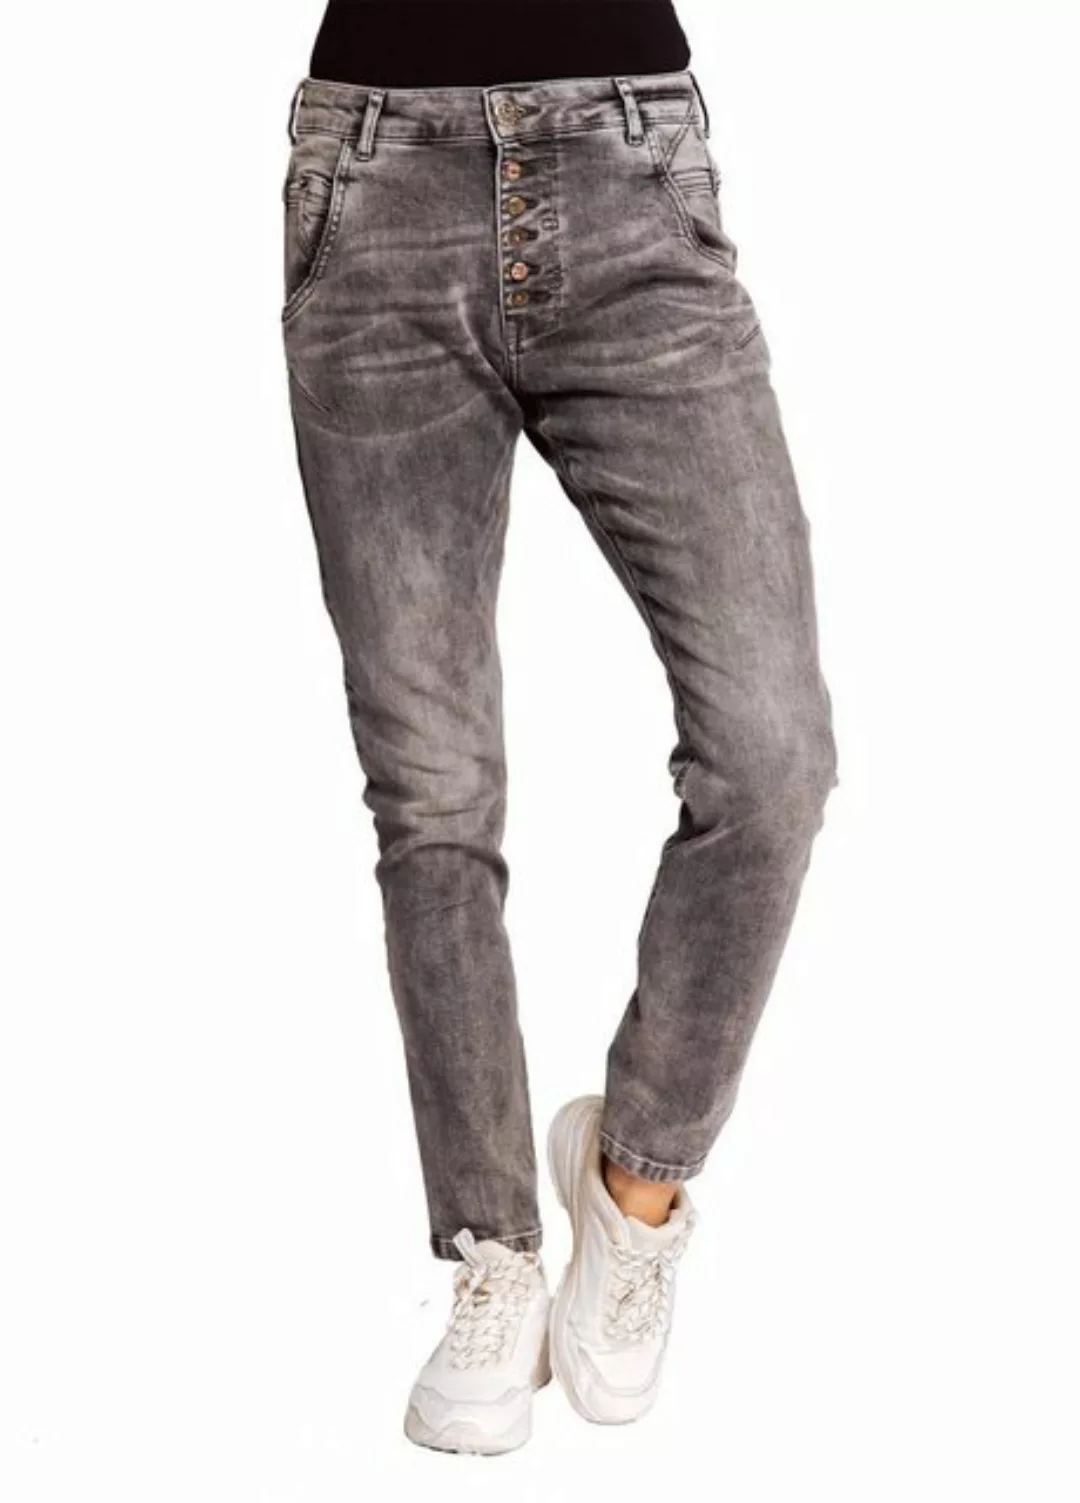 Zhrill Mom-Jeans Boyfriend Jeans AMY Grey angenehmer Tragekomfort günstig online kaufen